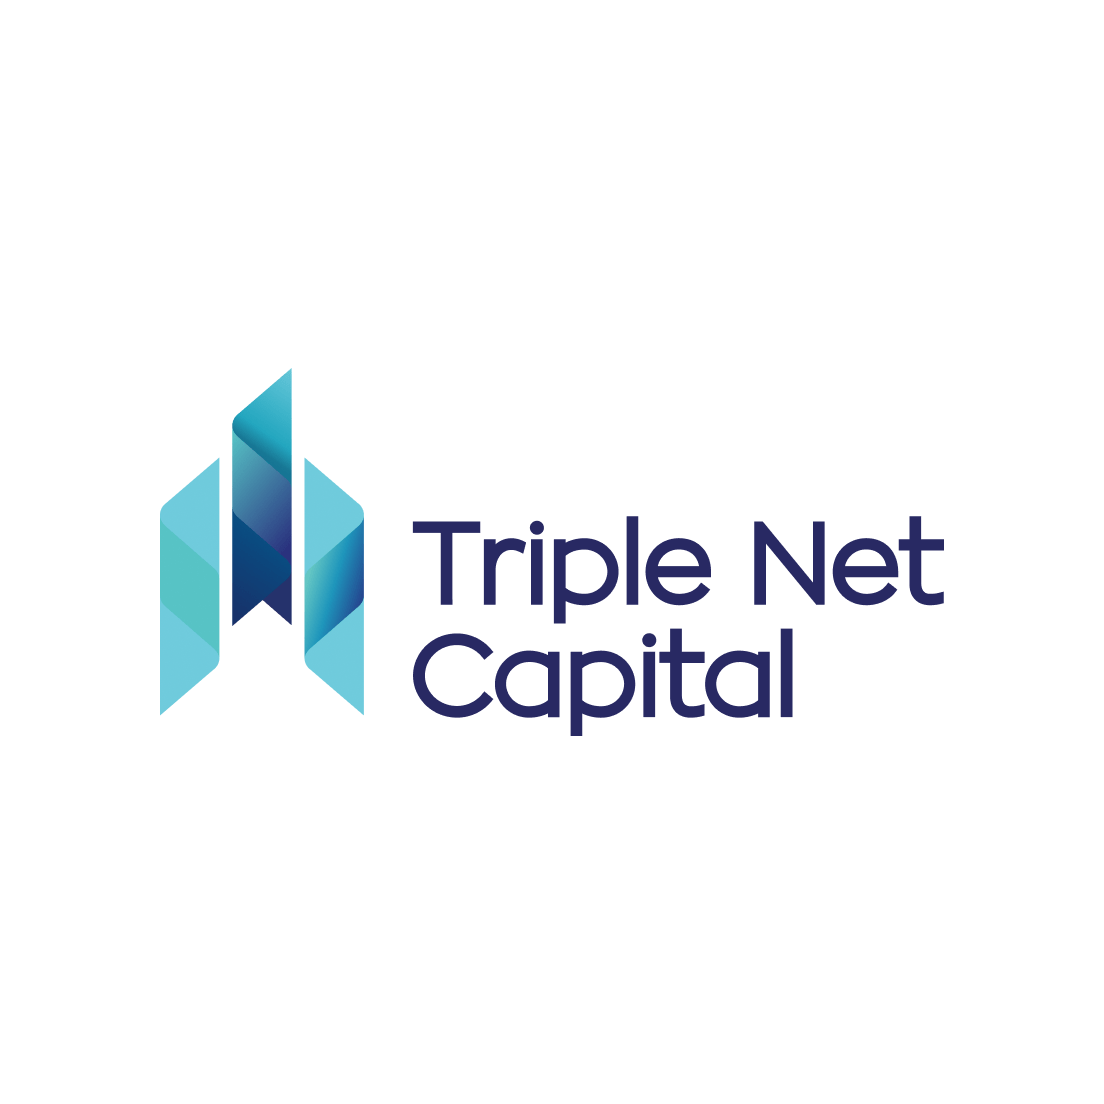 Triple Net Capital